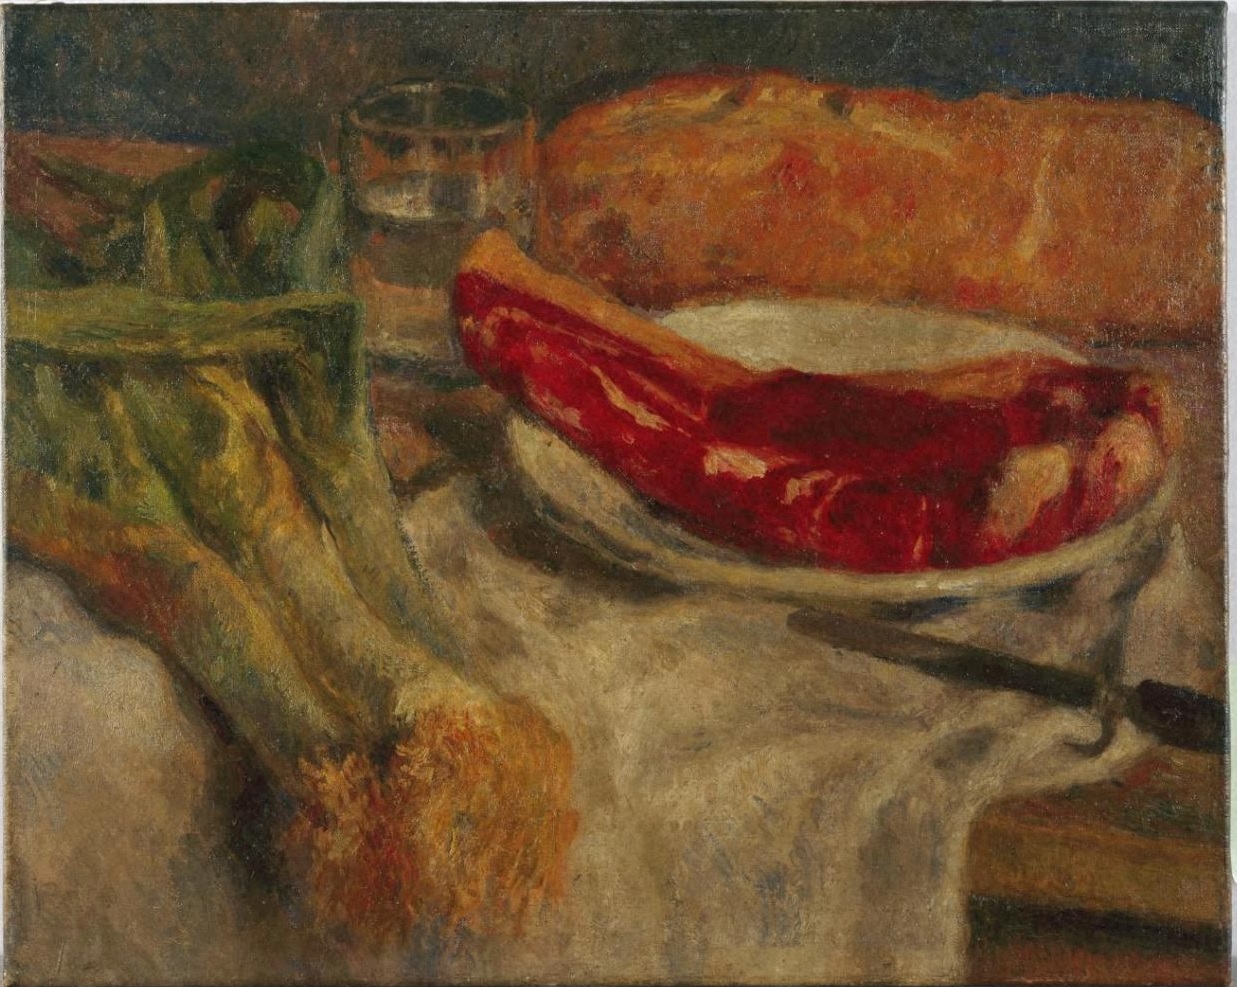 安井曽太郎「パンと肉」1910年、愛知県美術館所蔵